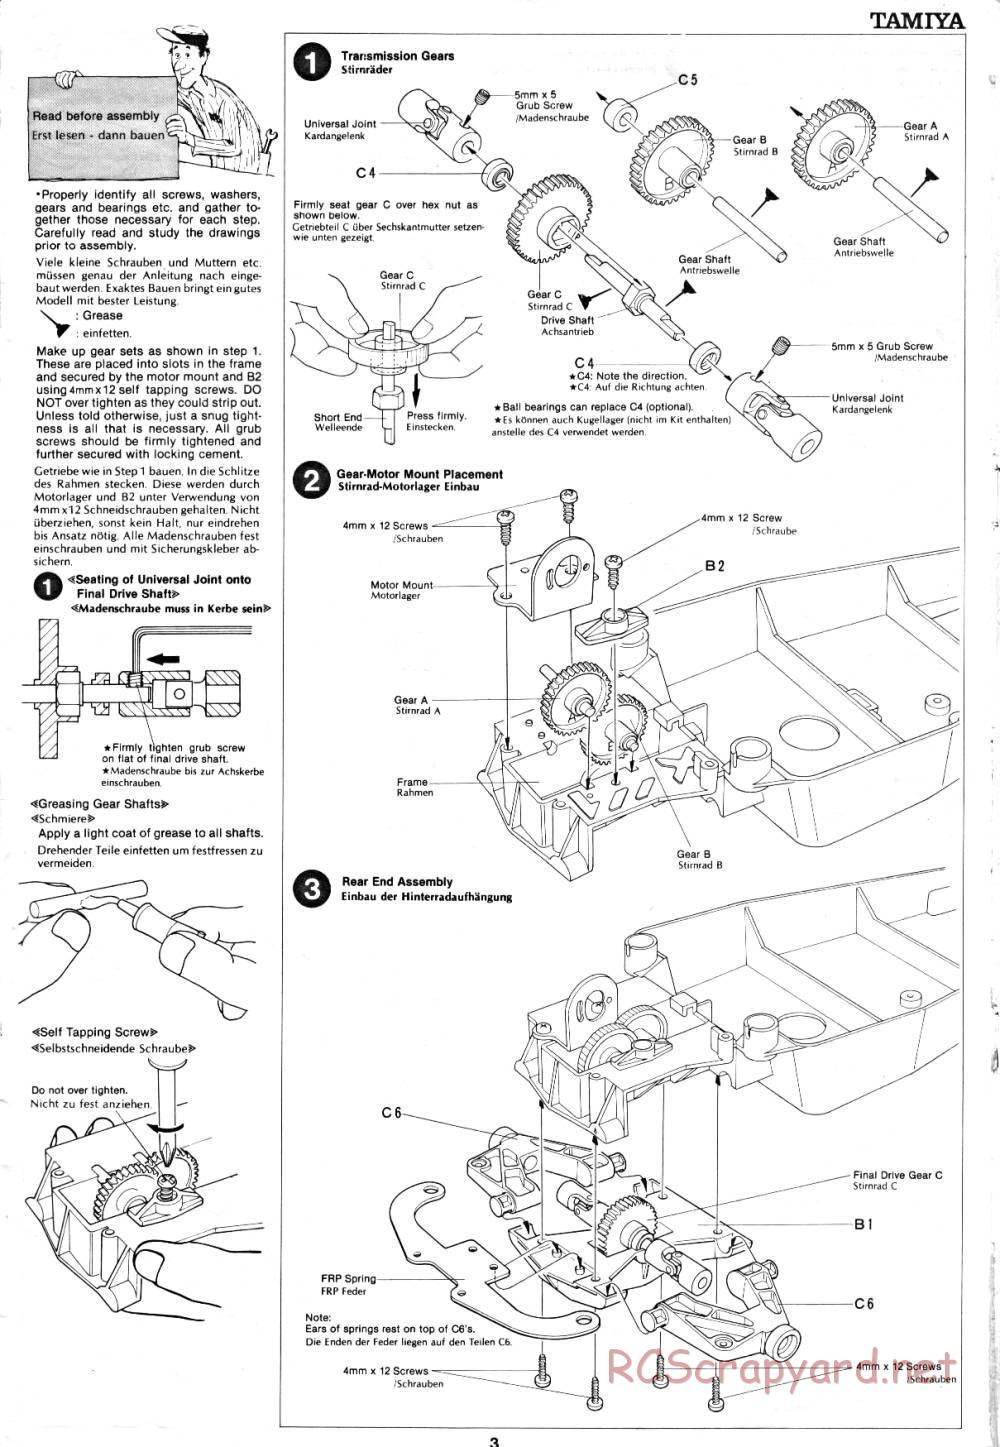 Tamiya - Sand Rover - 58024 - Manual - Page 3